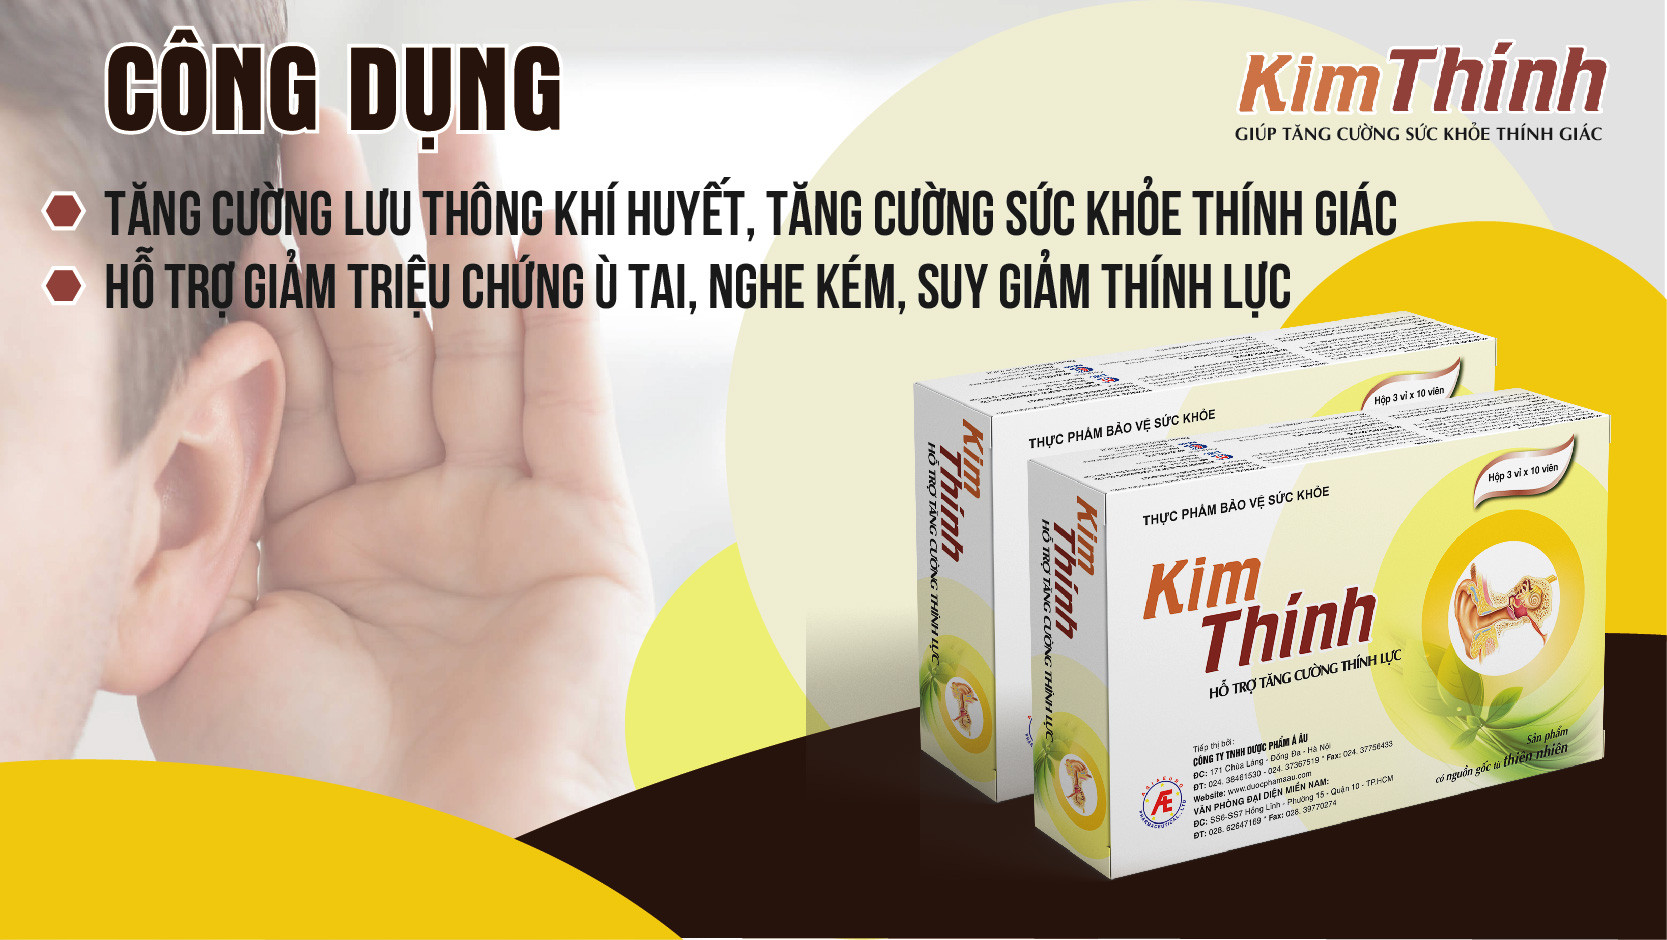 Kim Thính - Giúp tăng cường sức khỏe thính giác.